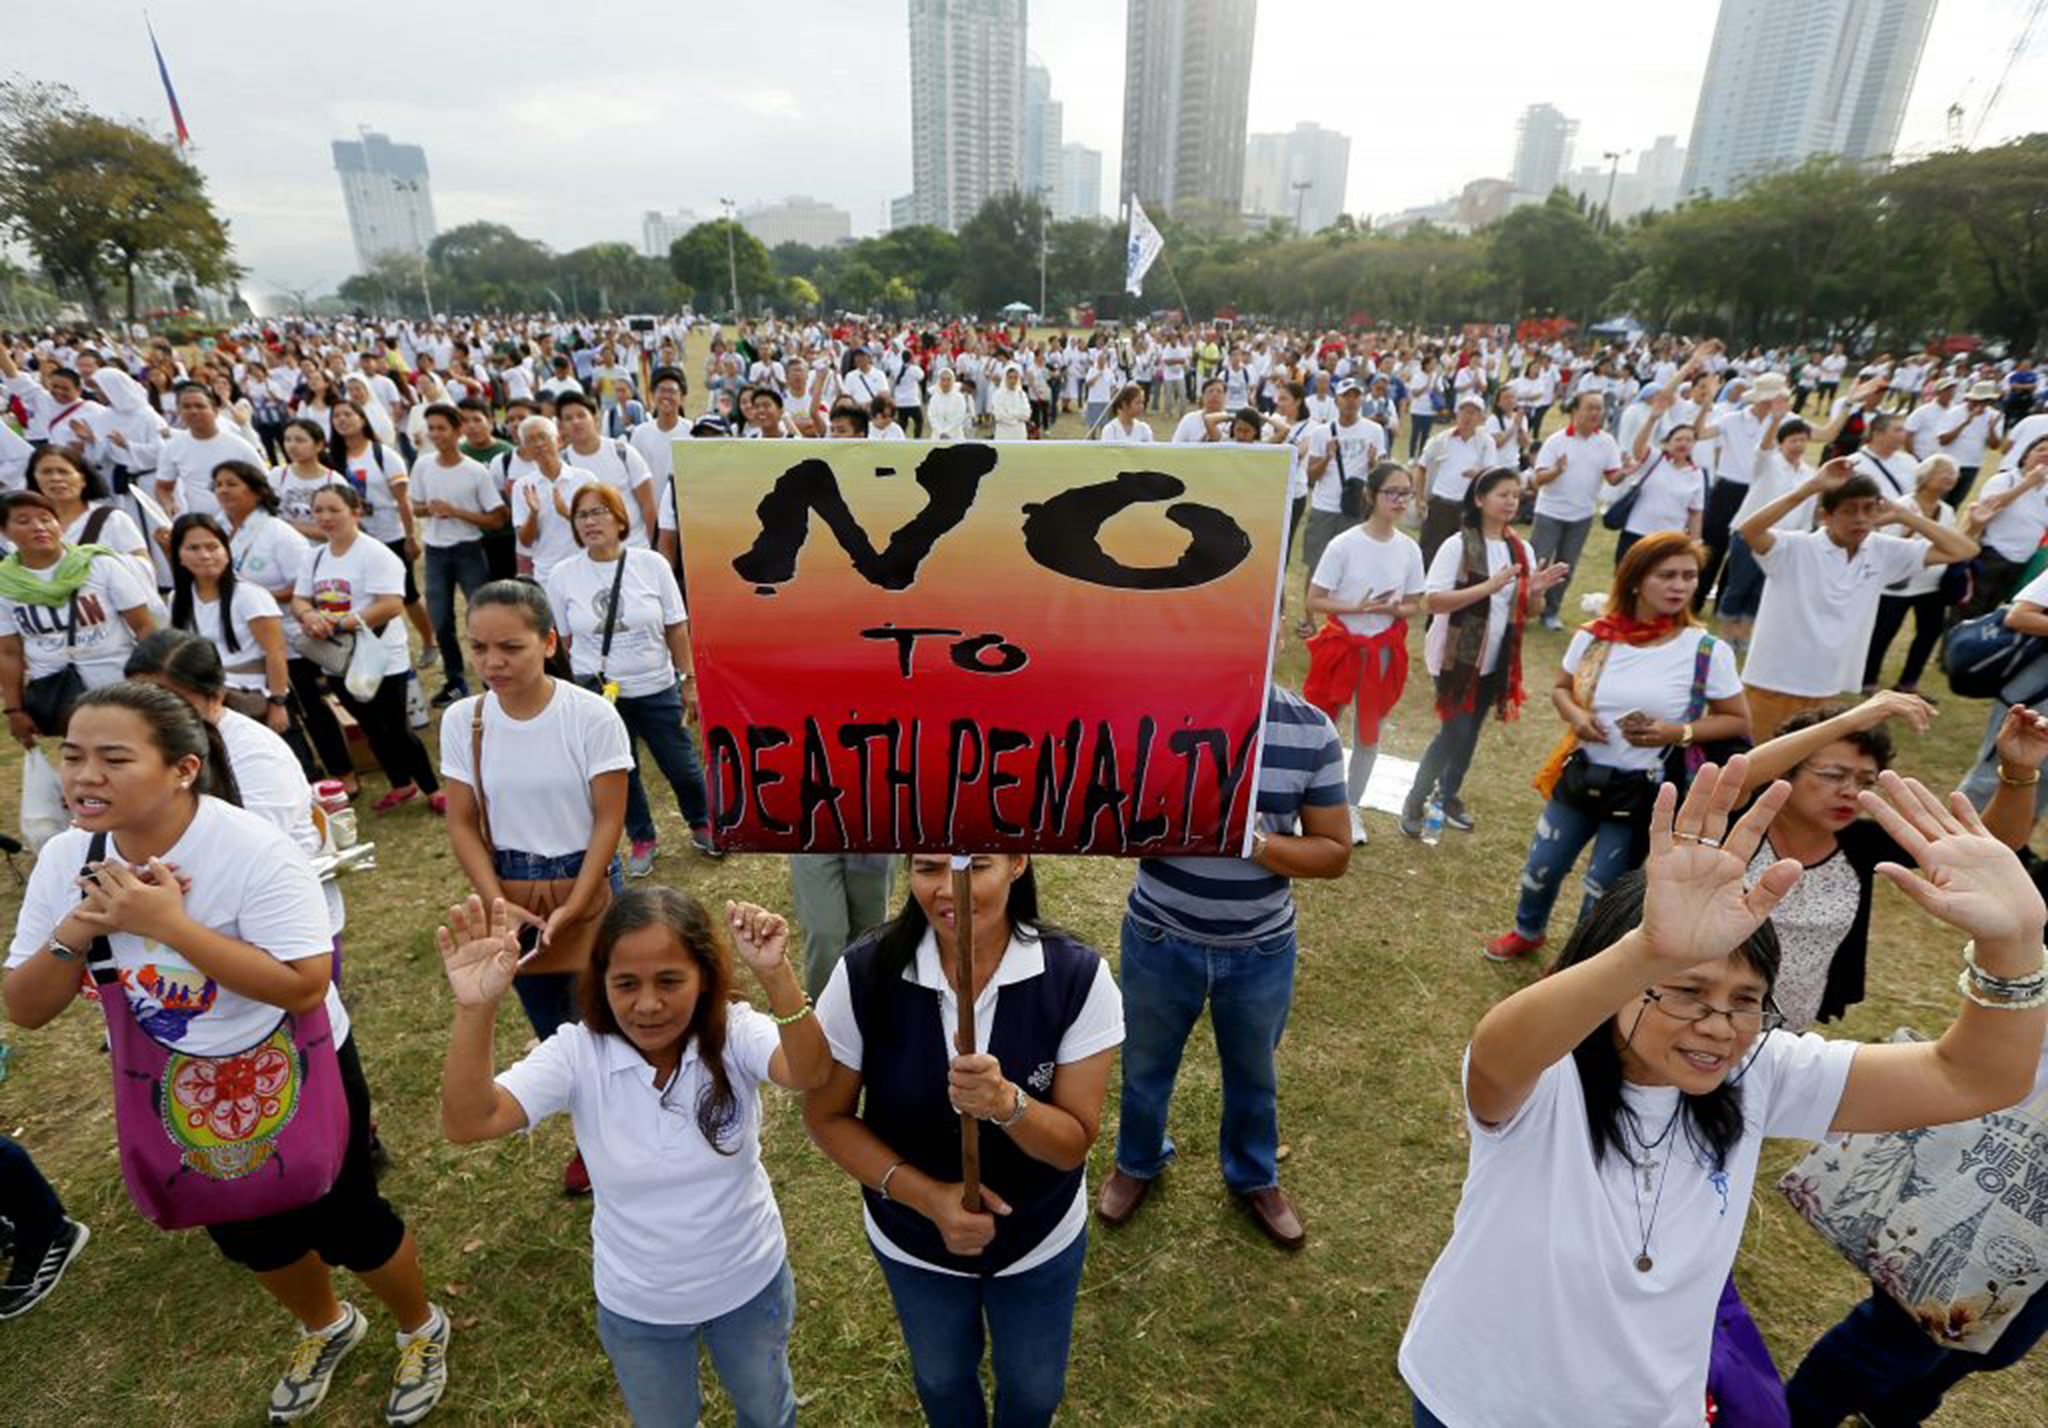 Consulado das Filipinas pede a cidadãos que desistam de eventos políticos